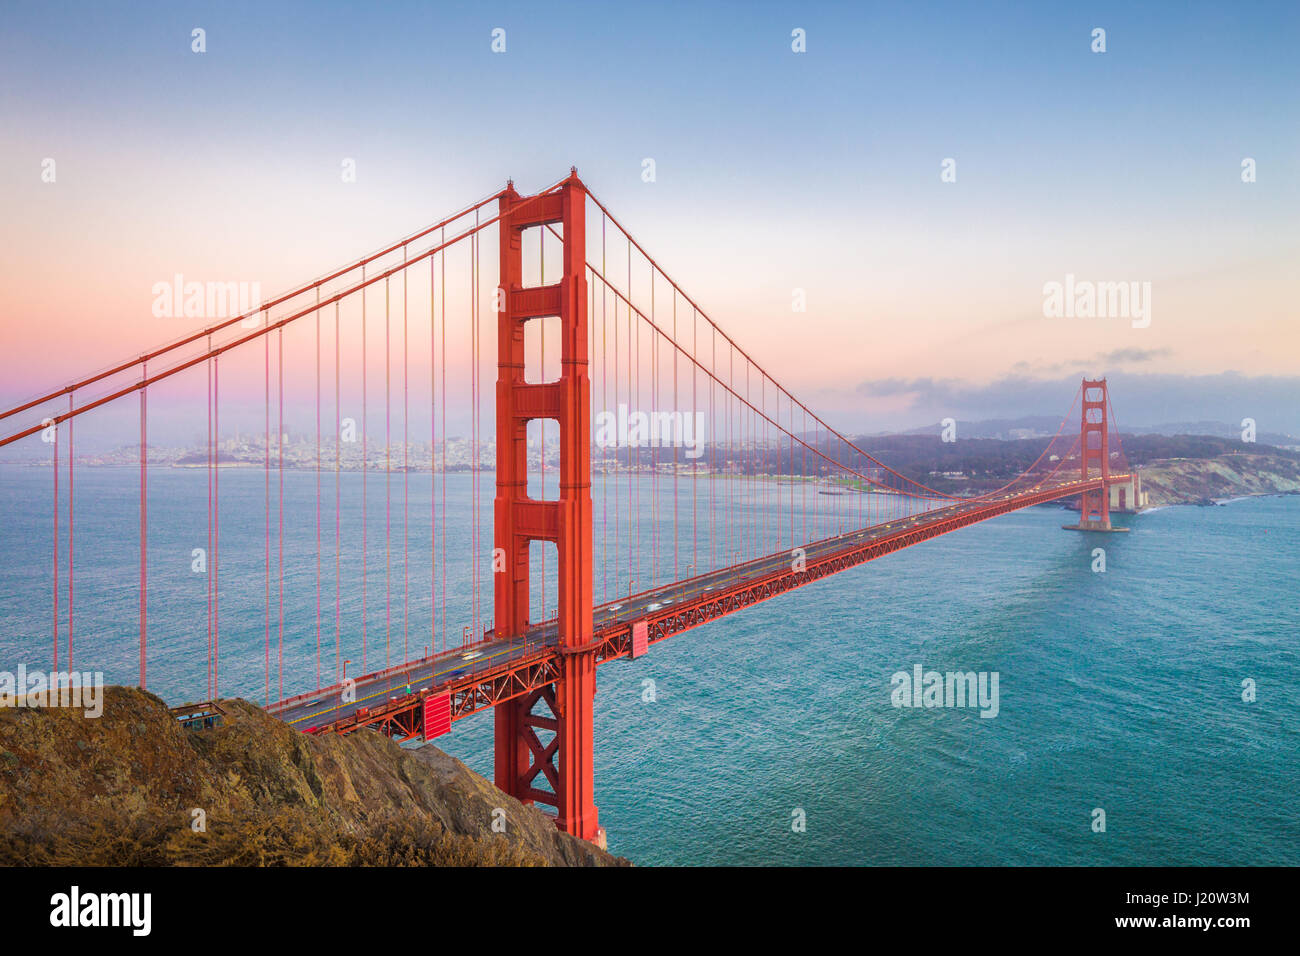 Classic vue panoramique de célèbre Golden Gate Bridge vu depuis la batterie Spencer vue dans très beau post twilight blue hour pendant le coucher du soleil au crépuscule dans Banque D'Images